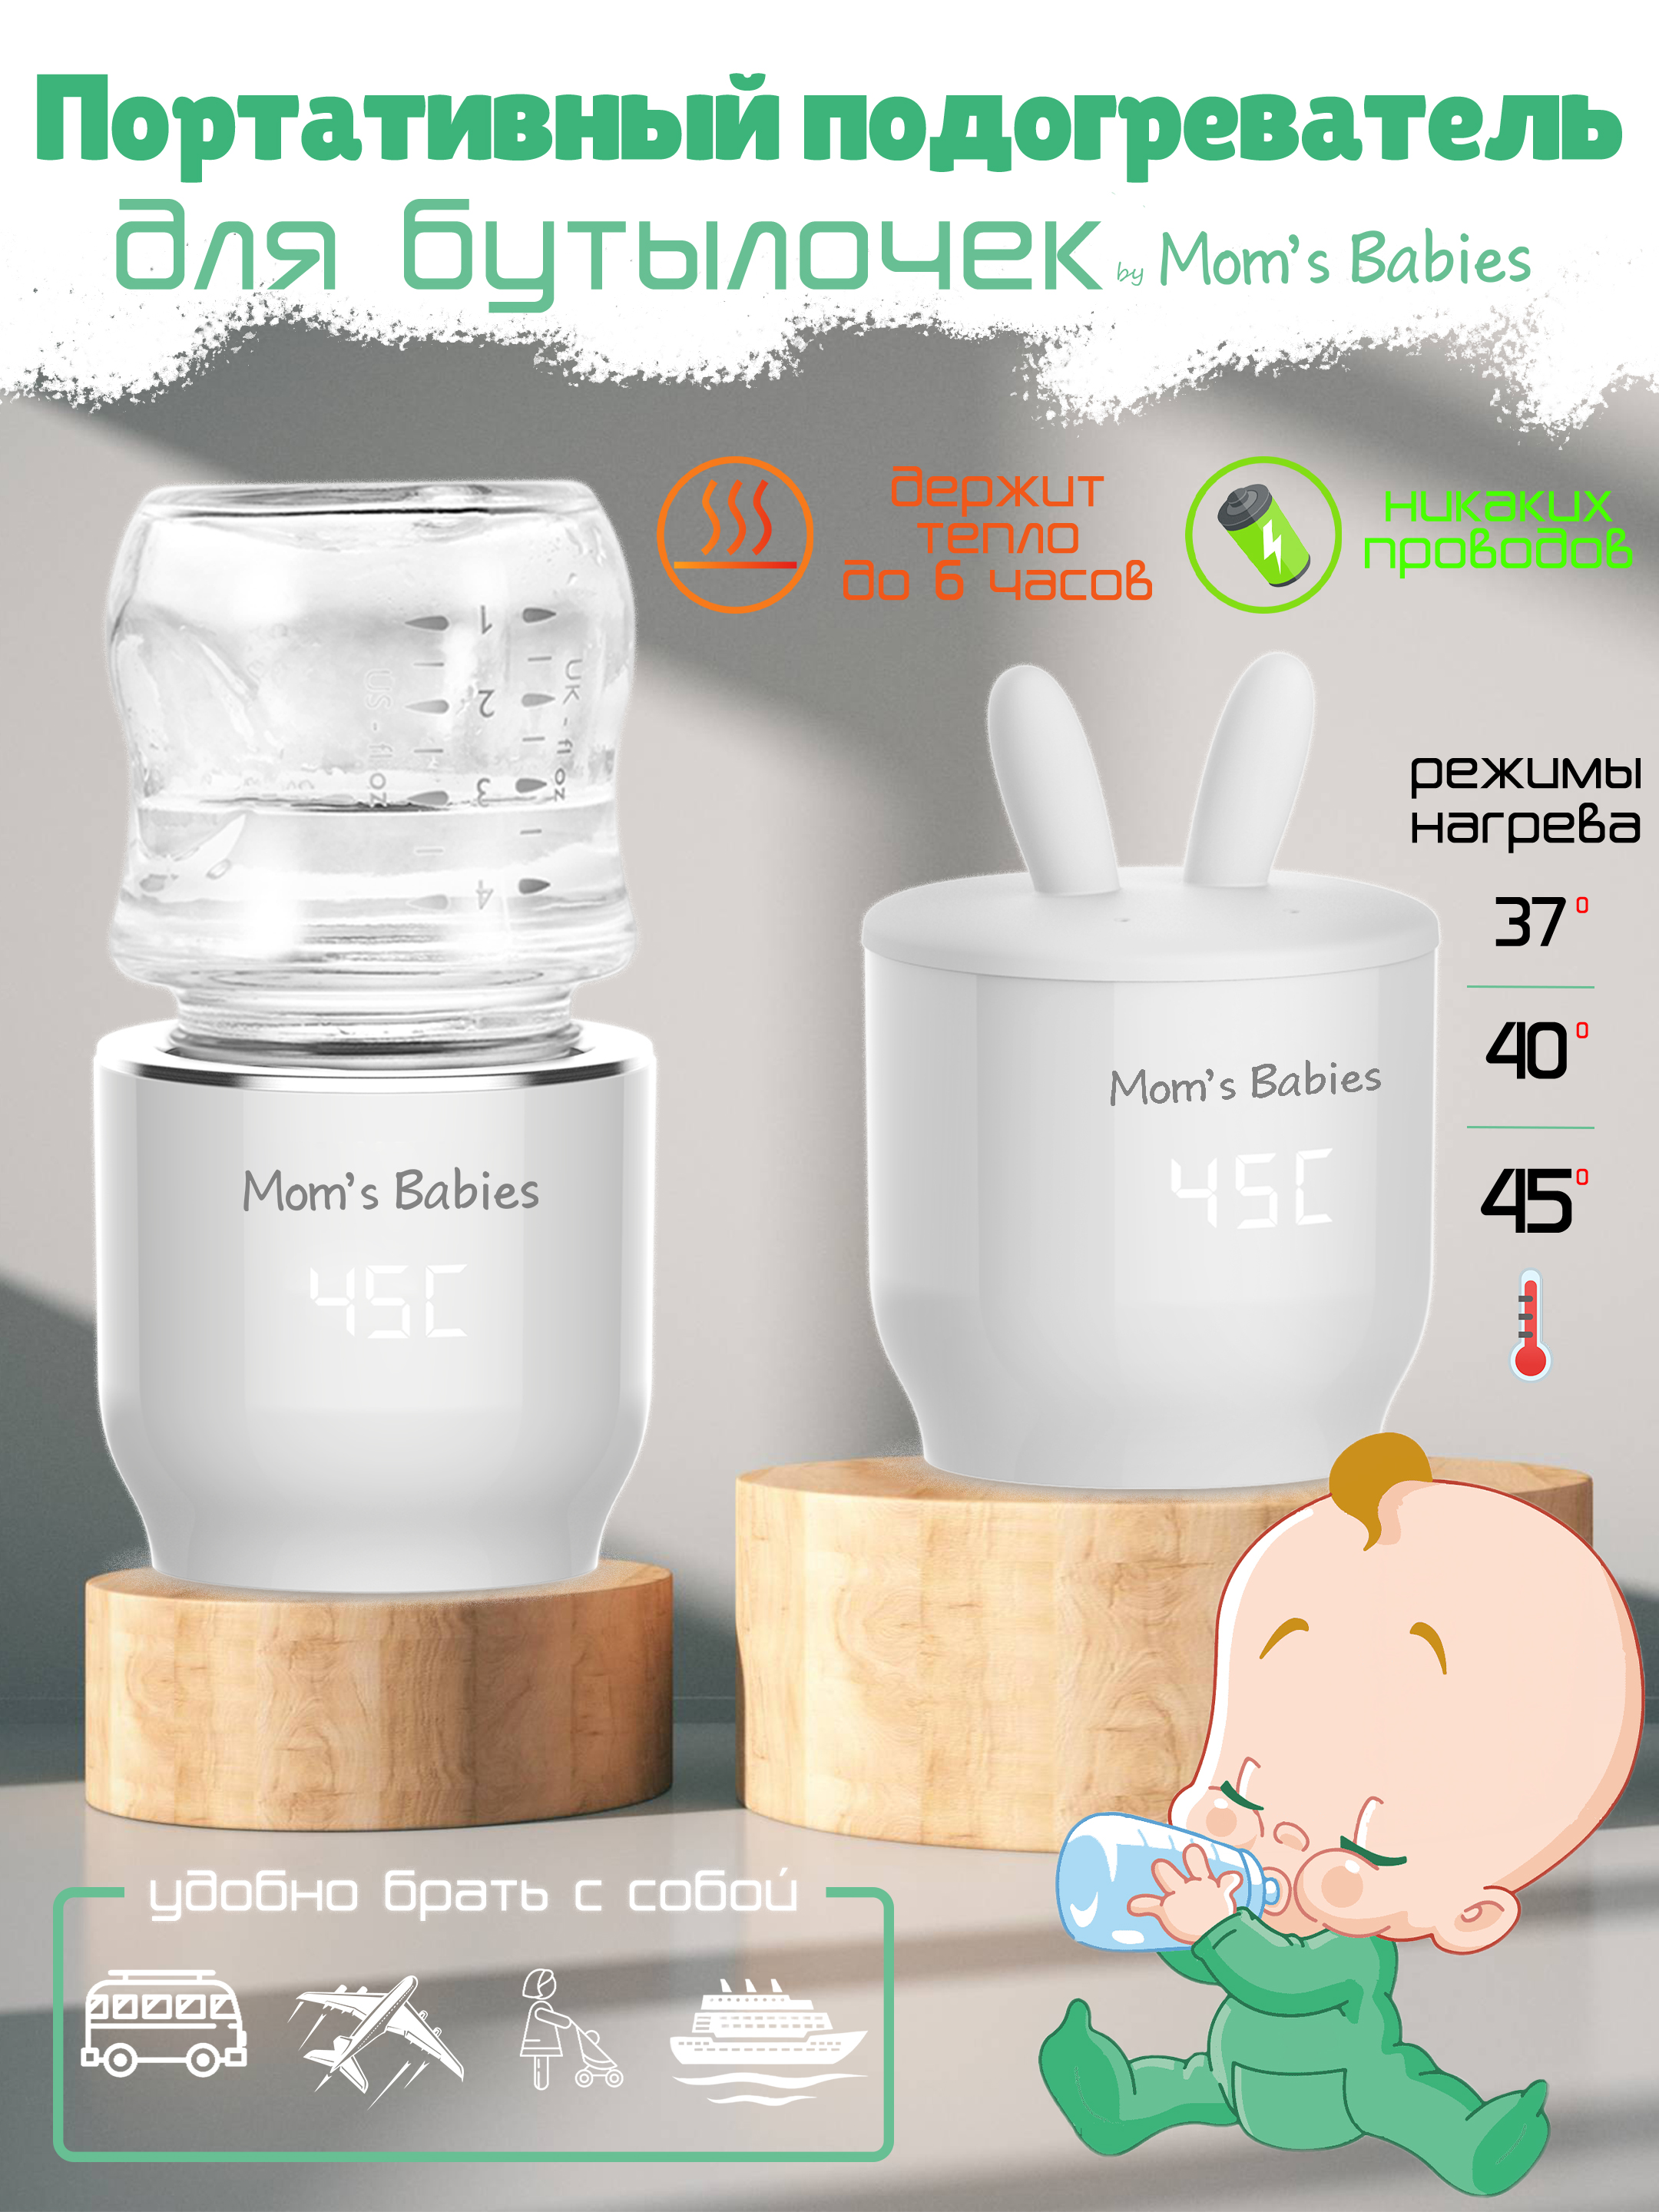 Портативный подогреватель Mom's Babies FS01 для бутылочек и детского питания белый проводные наушники и портативный аккумулятор 5000 mah